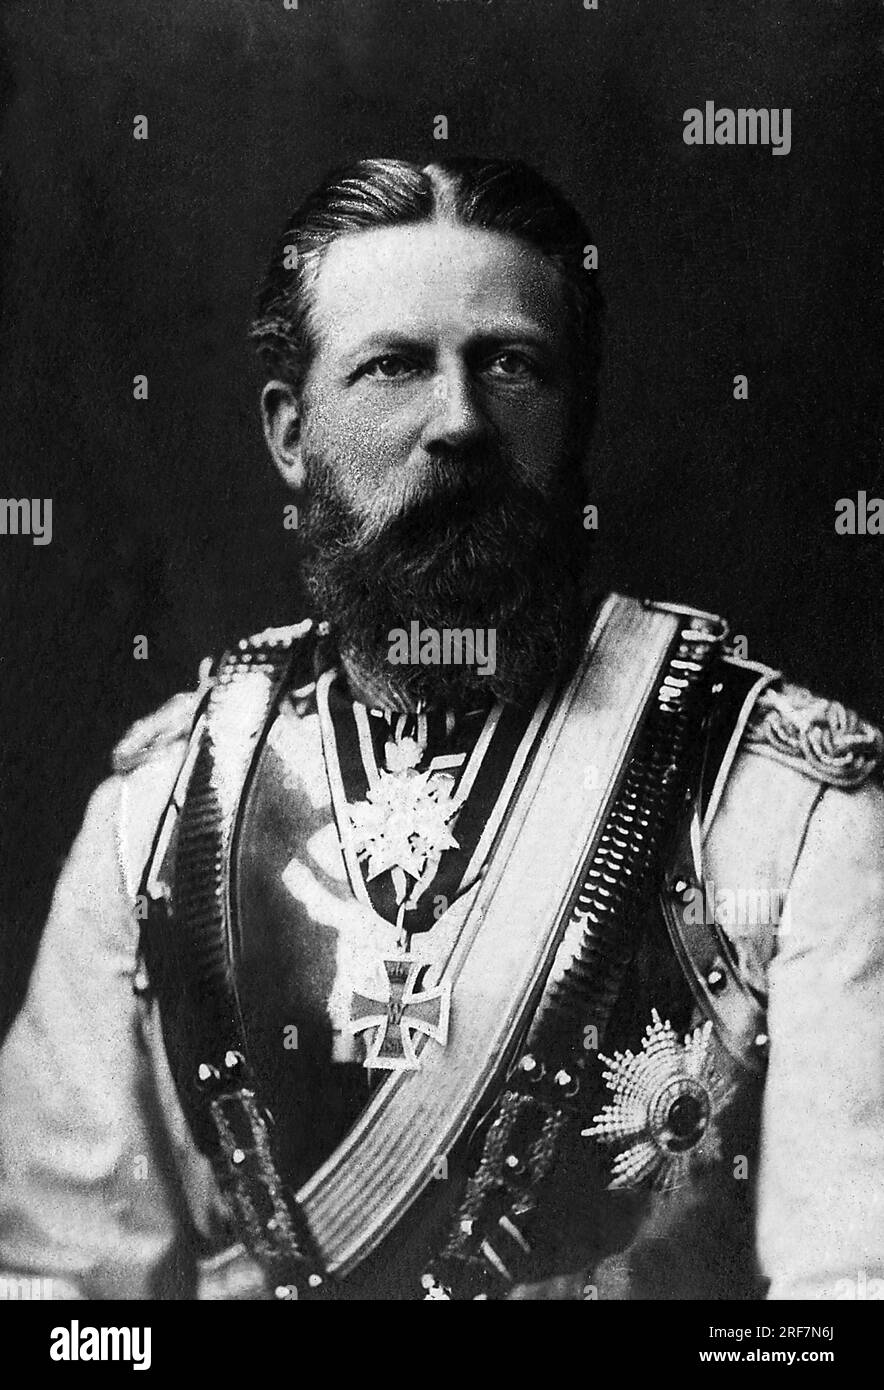 Portrait de Frederic III (1831-1888), roi de Prusse et empereur d'Allemagne en 1888 Pendant 99 jours. Stockfoto